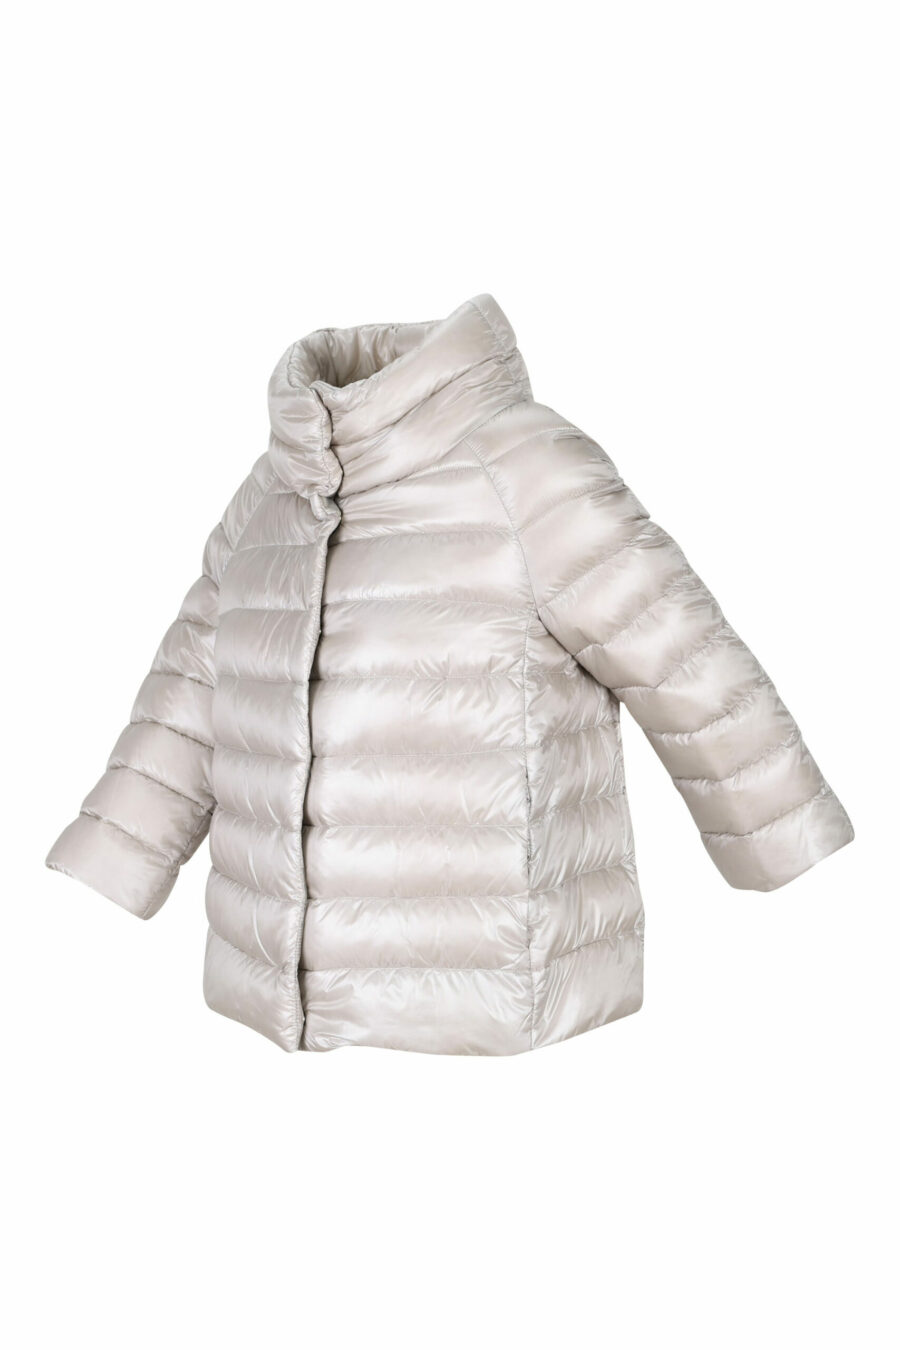 Mini manteau "sofia" gris perle à col montant - 8055721675770 1 échelle